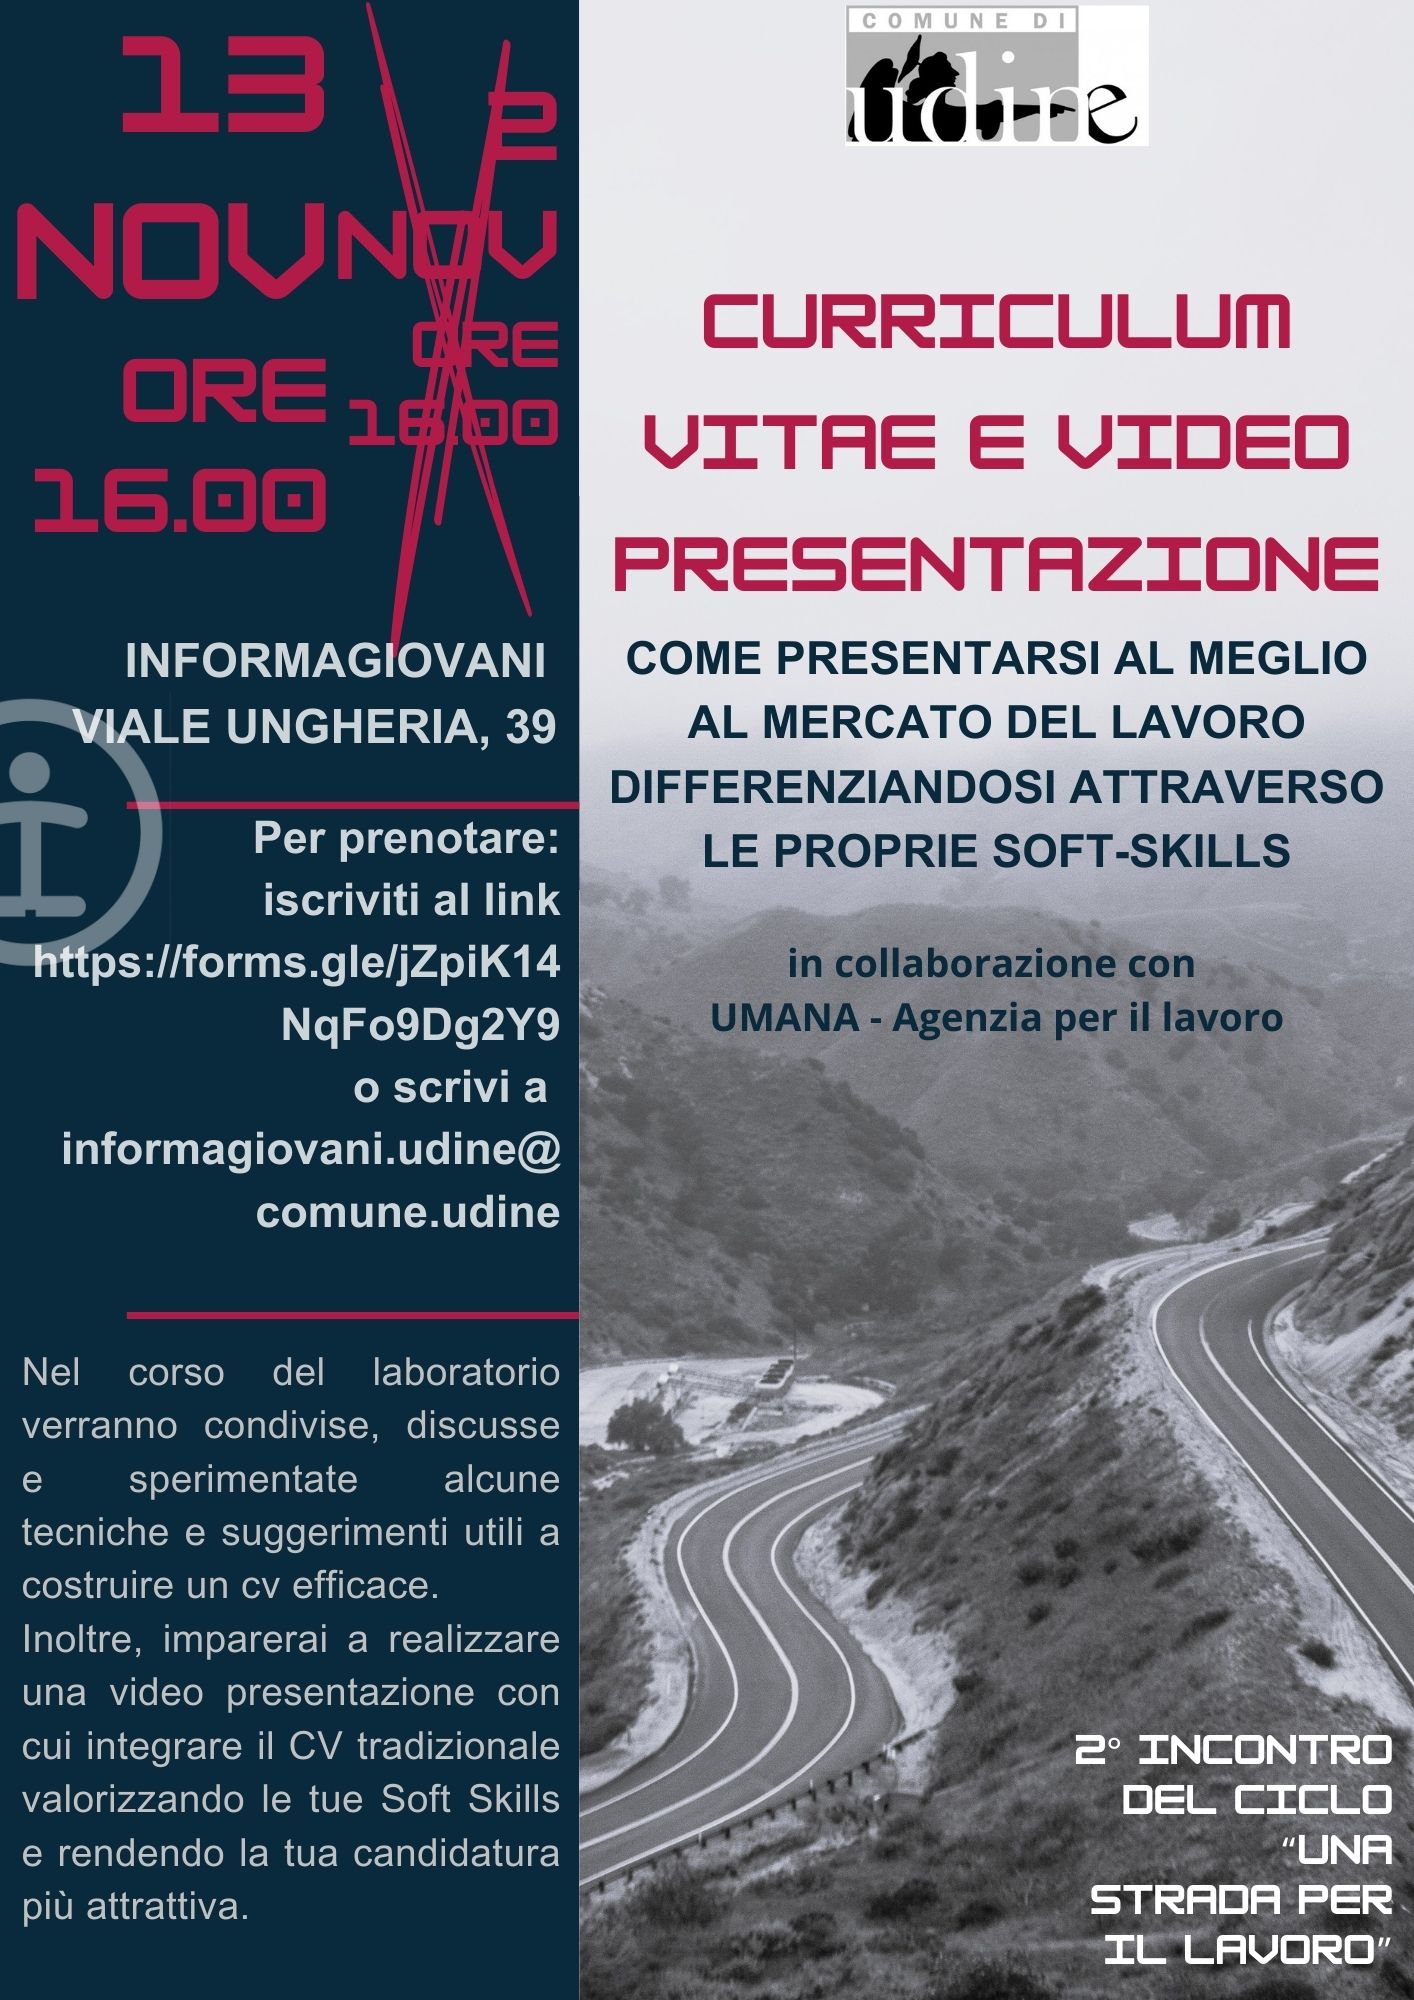 "Una strada per il lavoro" - Curriculum Vitae e Video Presentazione - 3° incontro del ciclo di appuntamenti c/o InformaGiovani di Udine